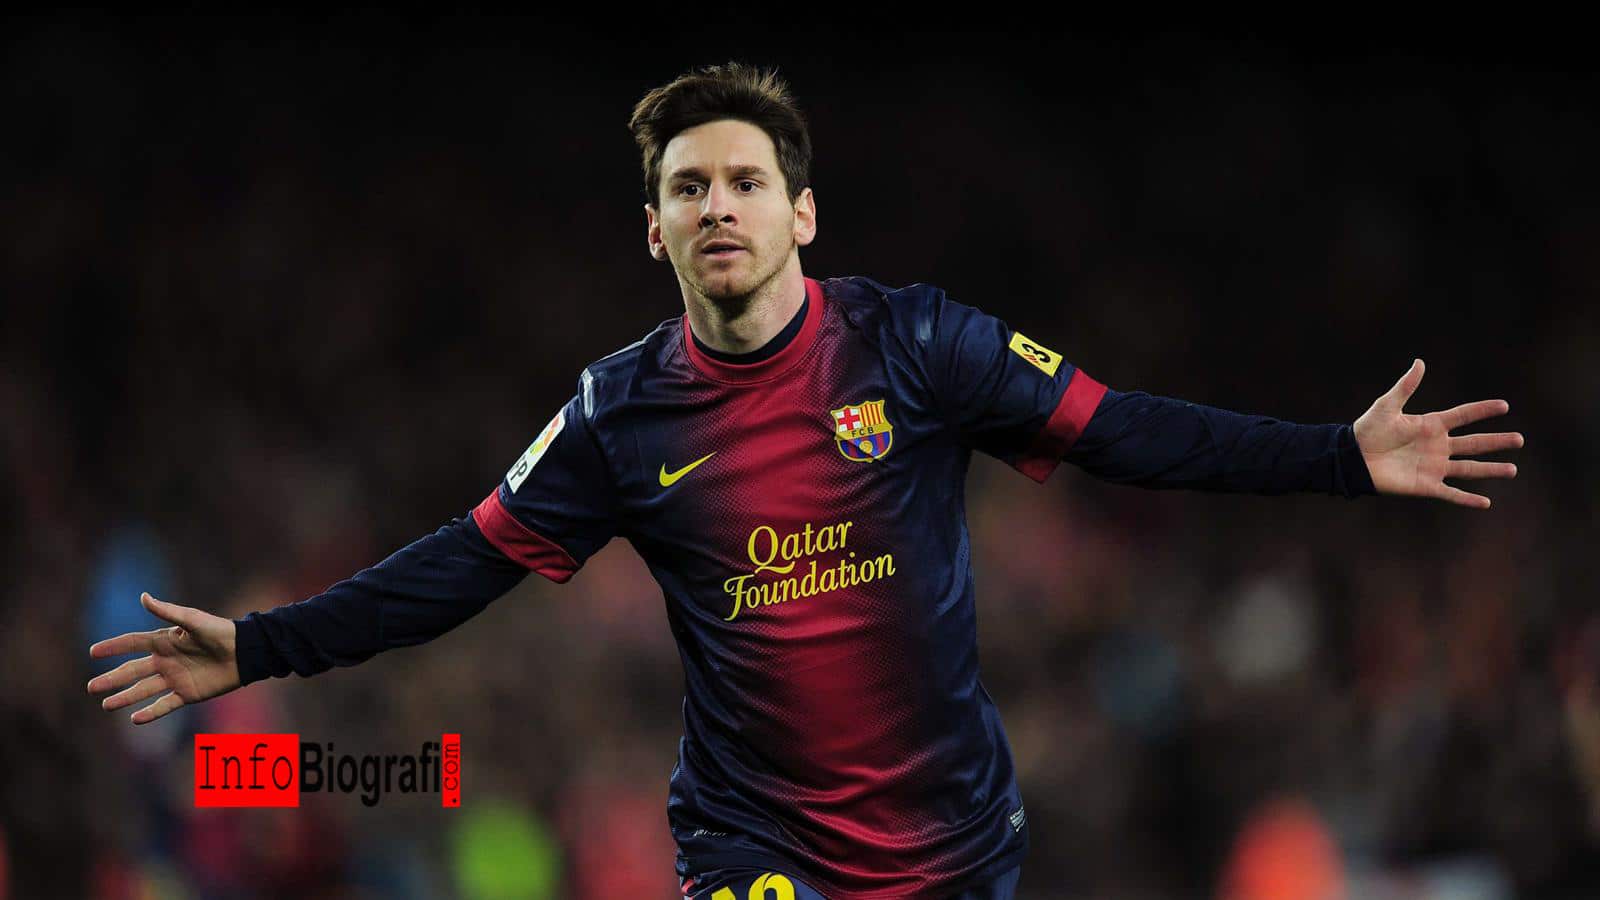 Biografi Dan Profil Lengkap Lionel Messi Striker Terbaik Asal Argentina Info Biografi